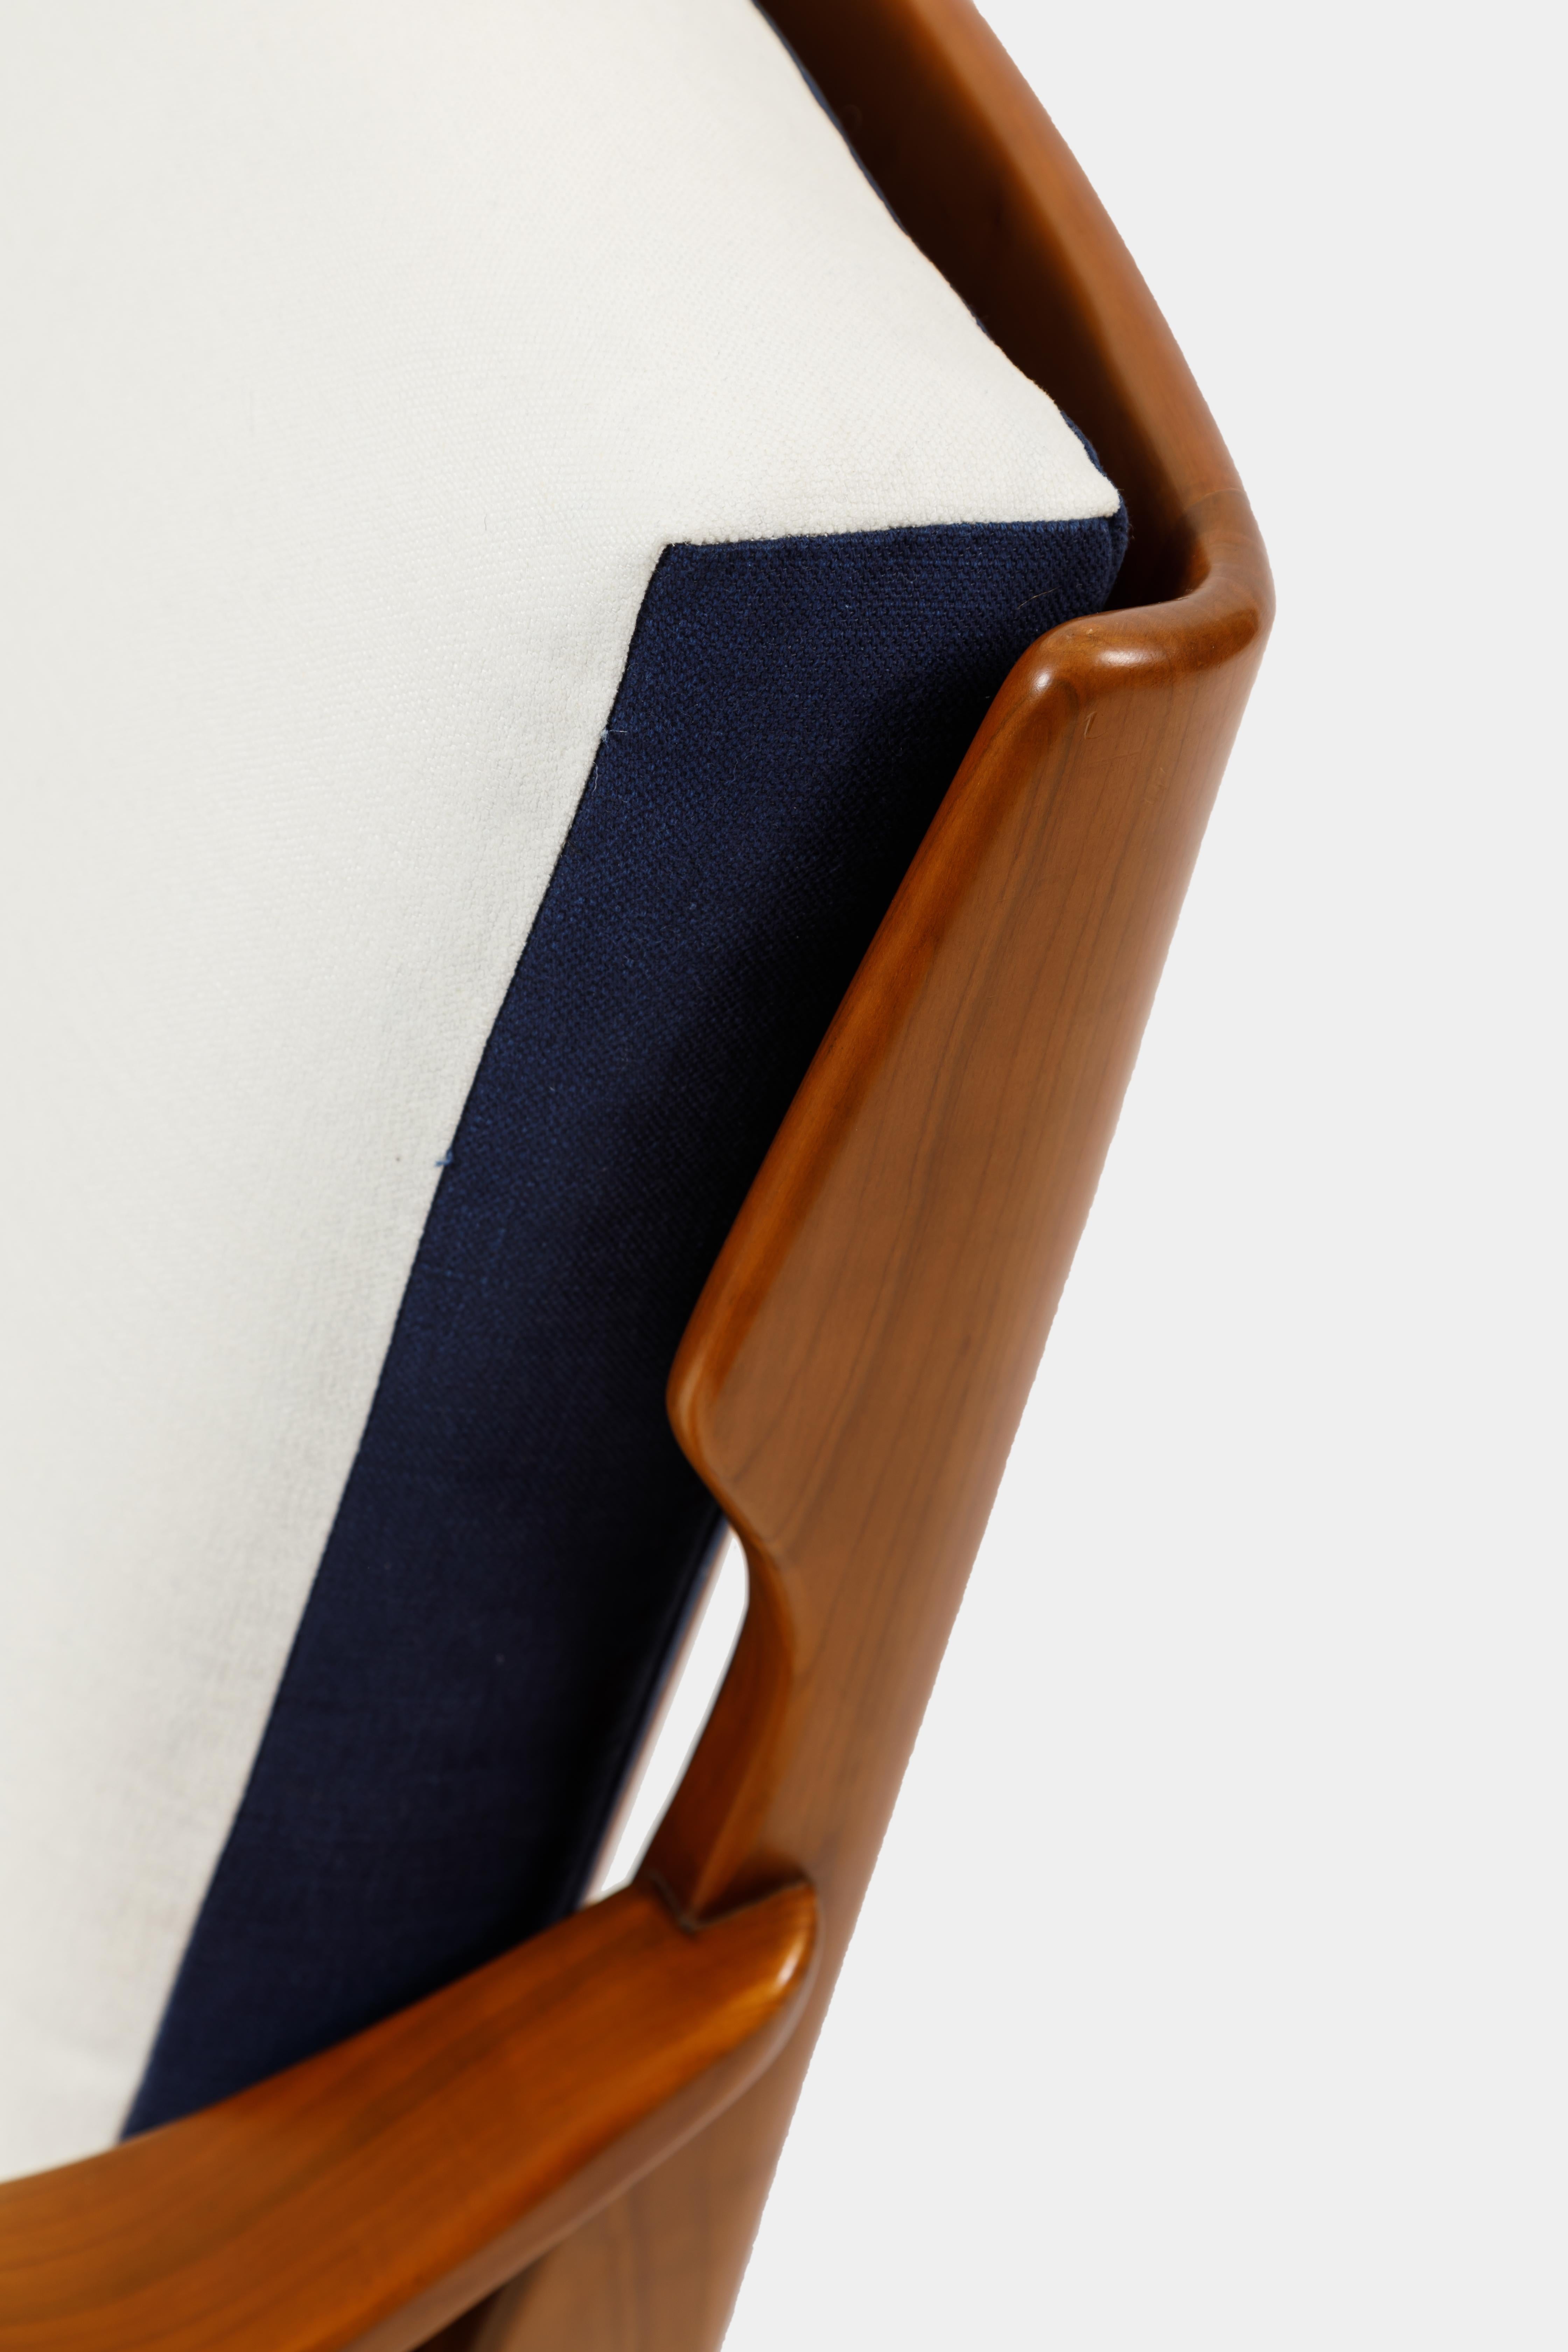 Gio Ponti für Cassina Paar Sessel aus Nussbaumholz Modell 516 (Polster)